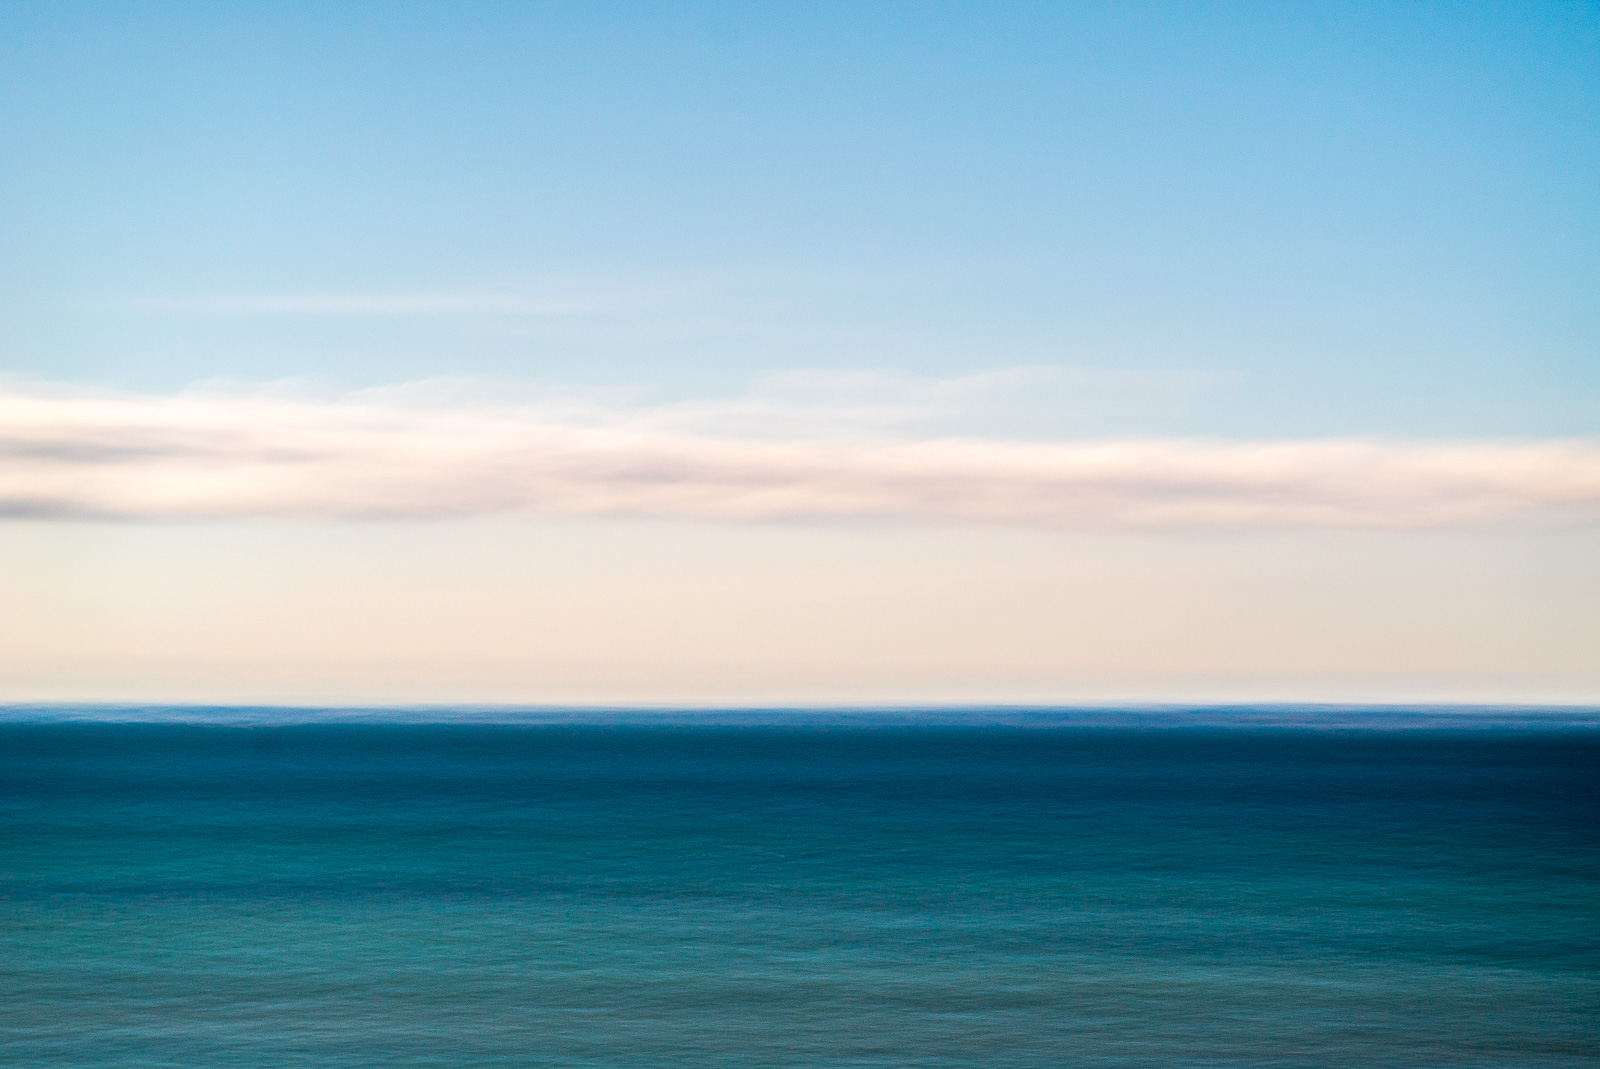 Durch Bewegung verwischtes, abstraktes Bild eines türkisgrünen Meeres mit einem schmalen Wolkenband darüber